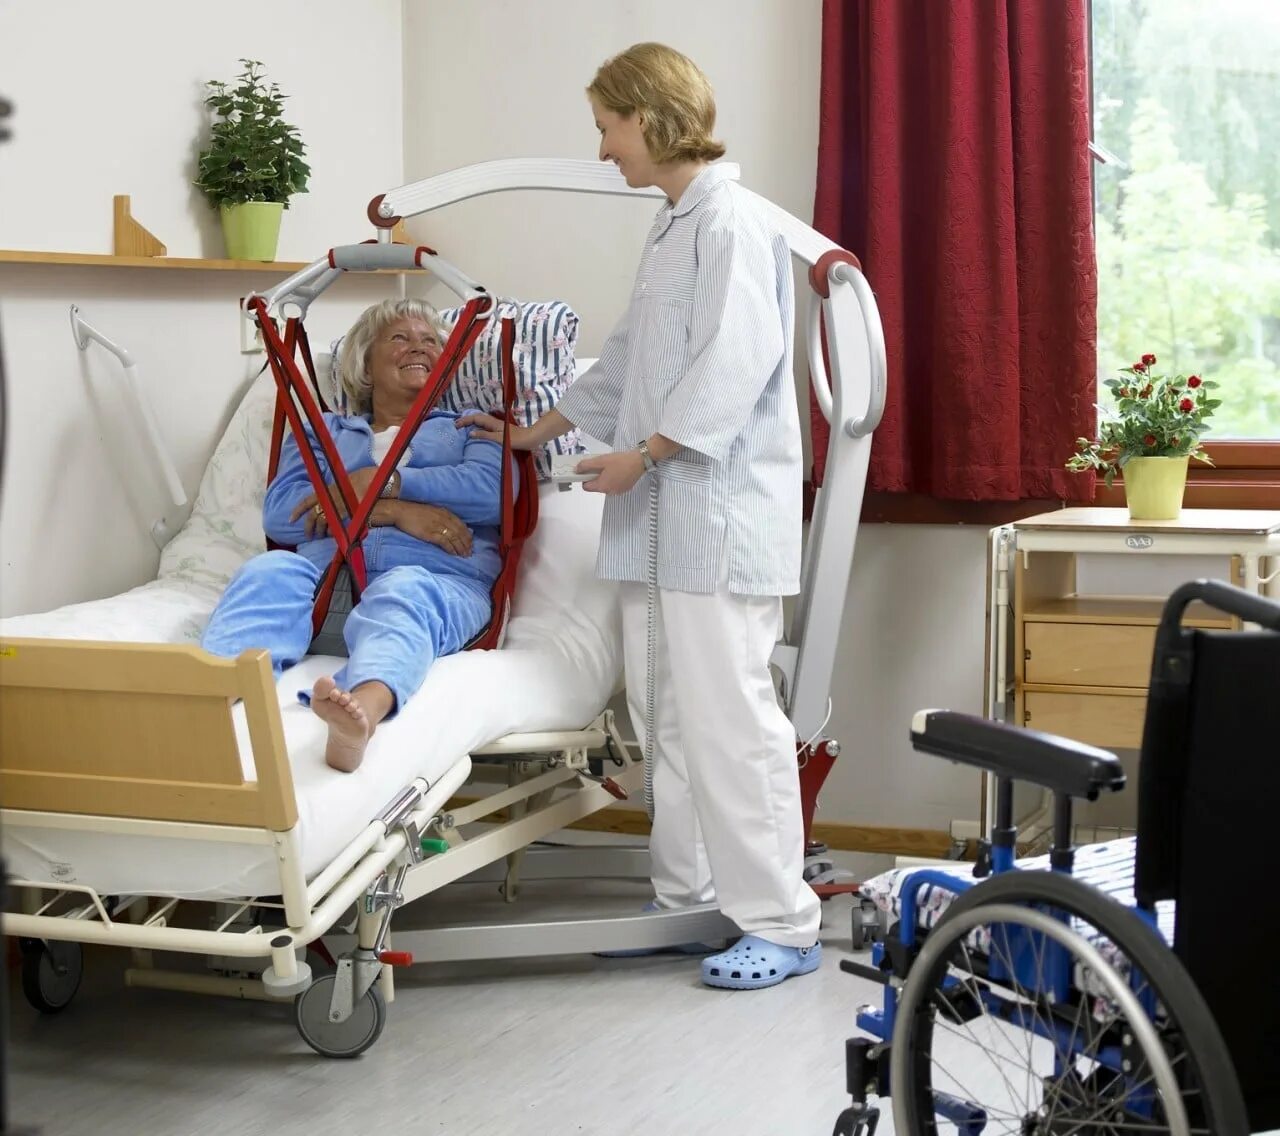 Учреждения по уходу за инвалидами. Перемещение лежачих больных. Оборудование для перемещения тяжелобольного пациента. Коляска для лежачих больных. Уход за пациентом.